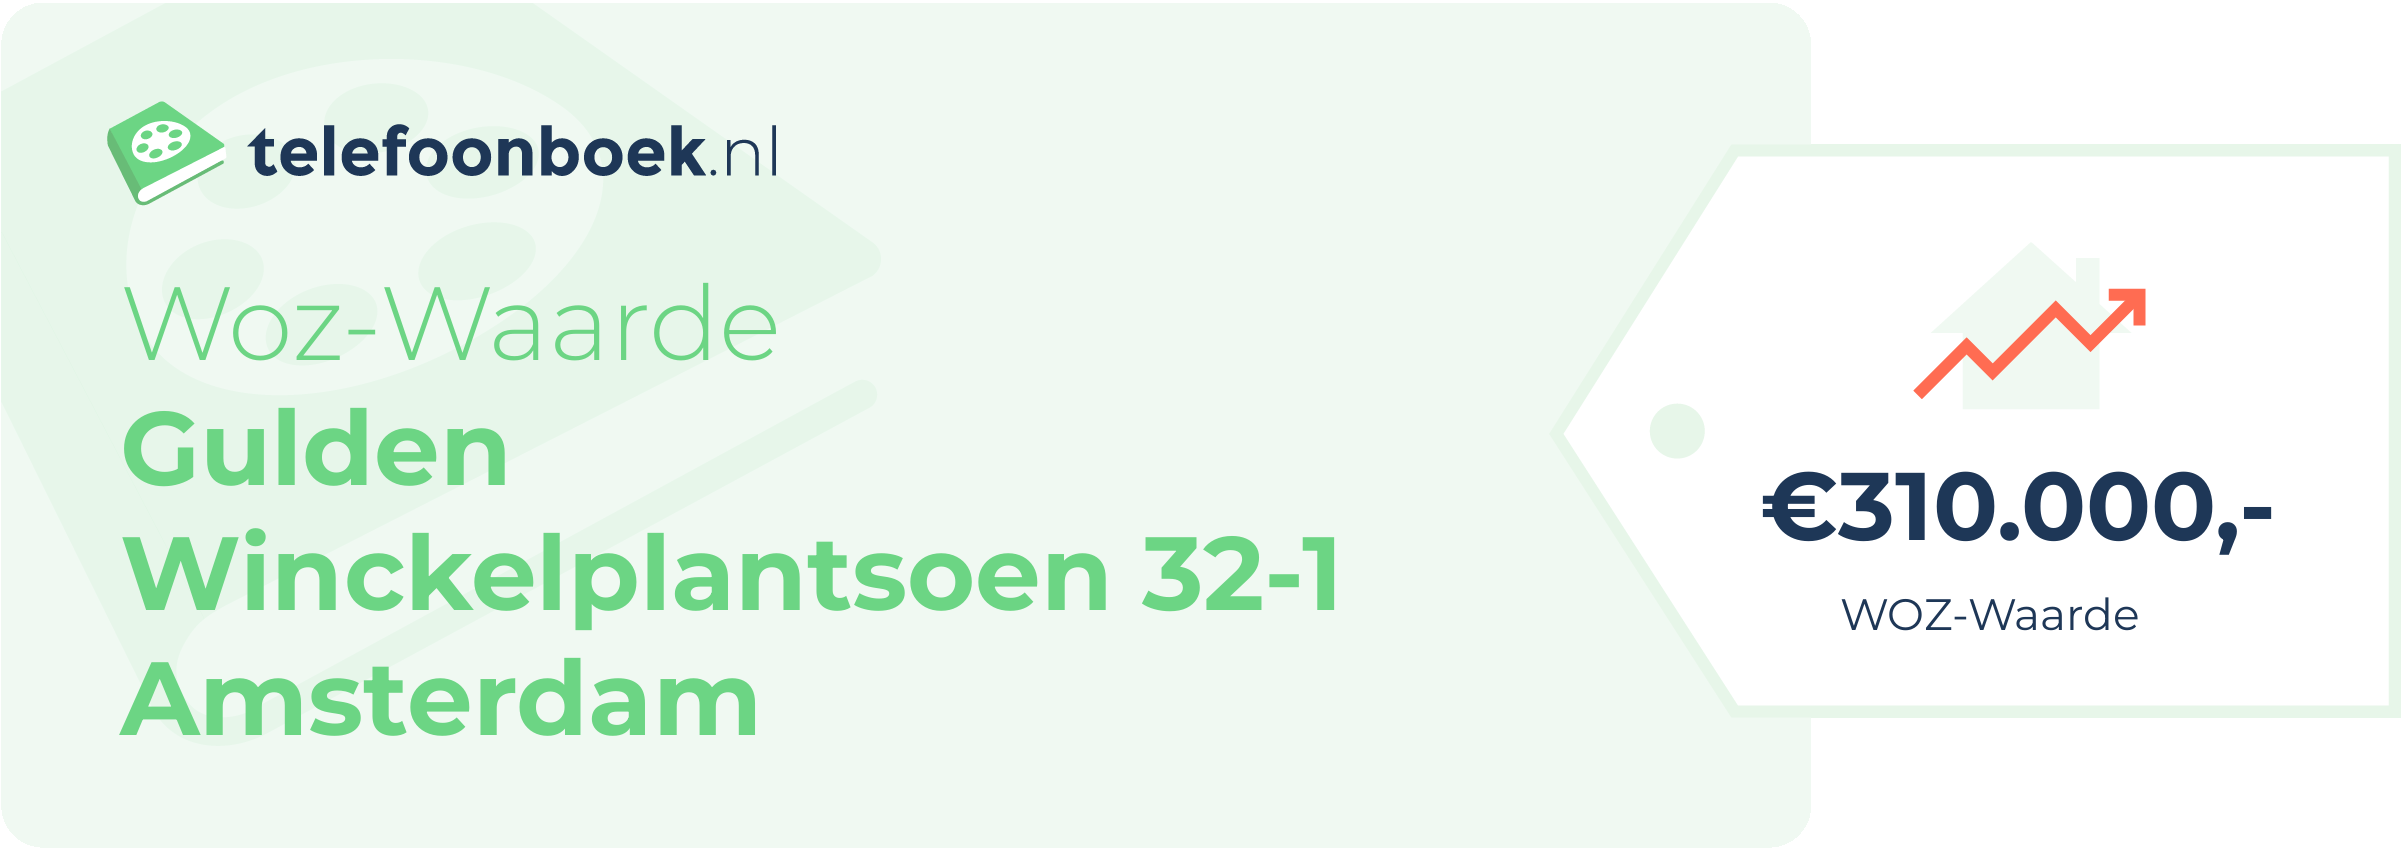 WOZ-waarde Gulden Winckelplantsoen 32-1 Amsterdam